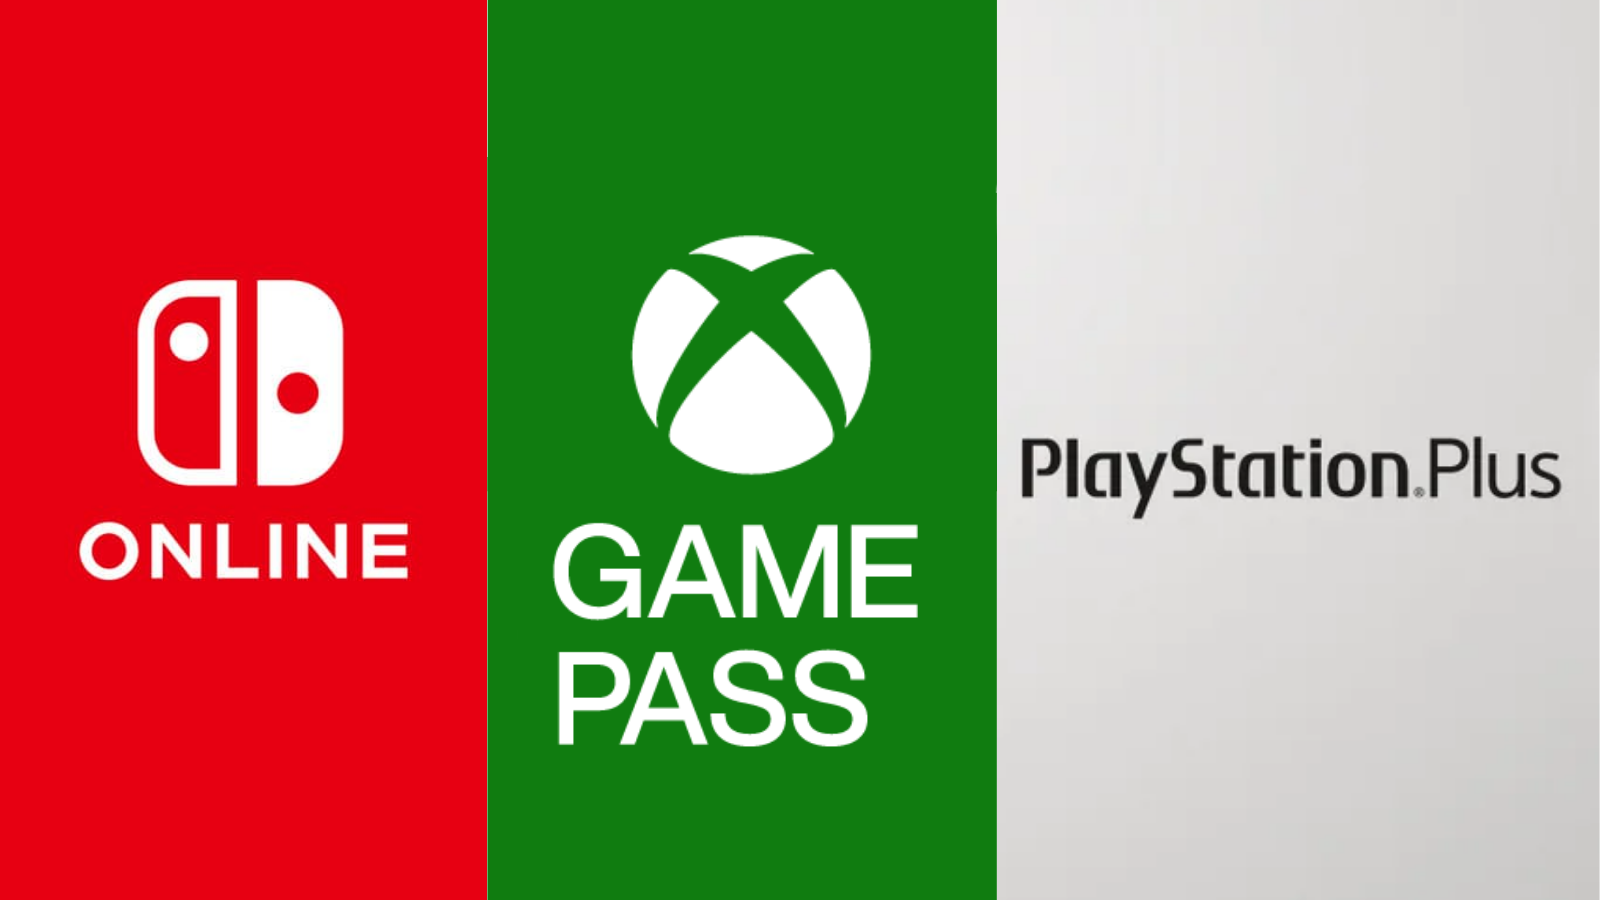 Xbox Game Pass não deve chegar para PlayStation ou Switch